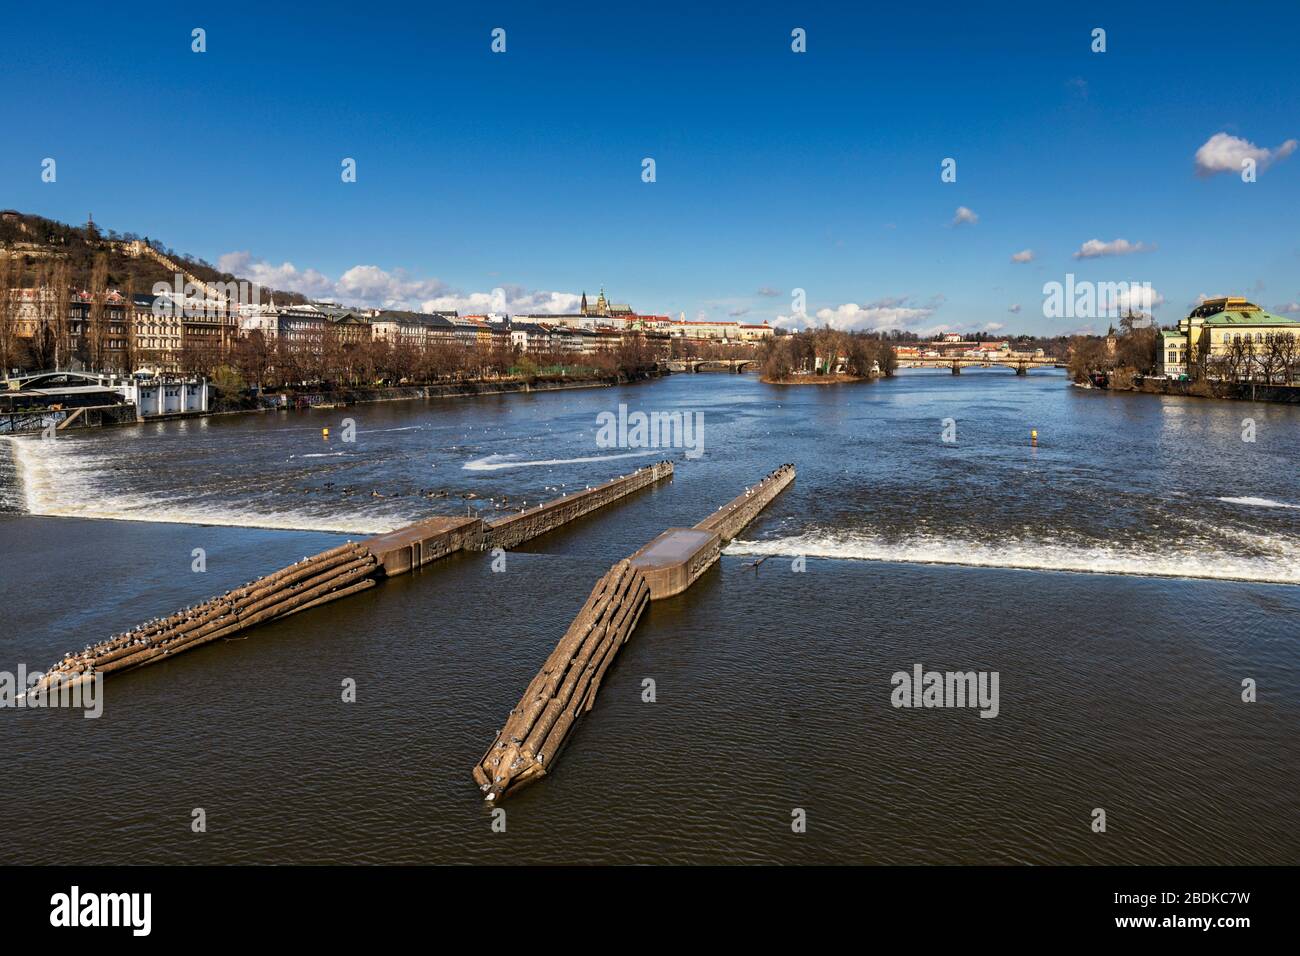 Vista desde el puente Jiraskuv de la presa de hormigón y canales que controlan el flujo de agua en el río Vltava , Jiráskův Most, Praga, República Checa Foto de stock